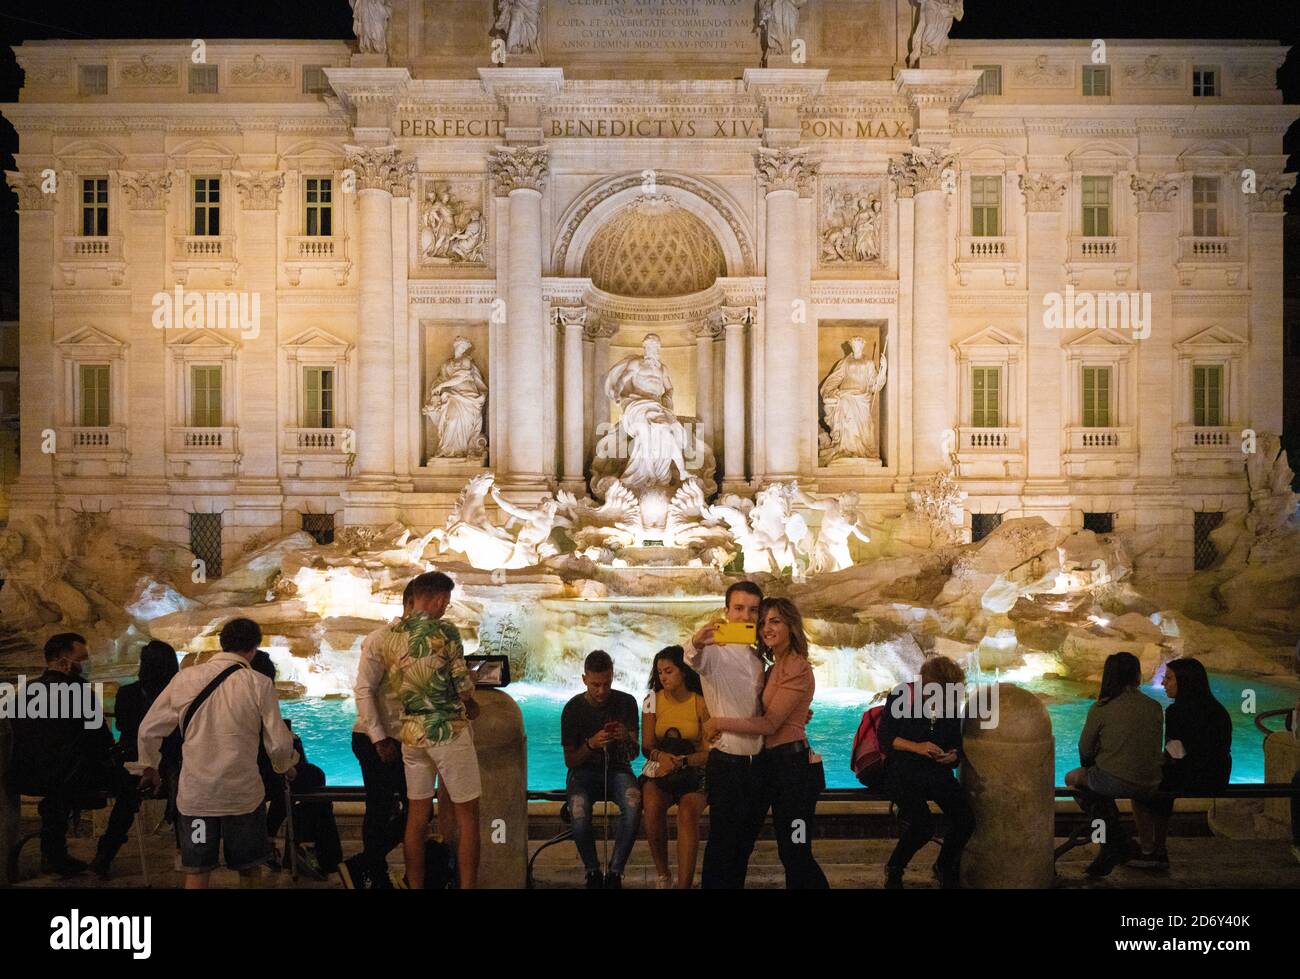 Una vista notturna della Fontana di Trevi a Roma. Da una serie di foto di viaggio in Italia. Data foto: Martedì 22 settembre 2020. Foto: Roger Garfield/al Foto Stock